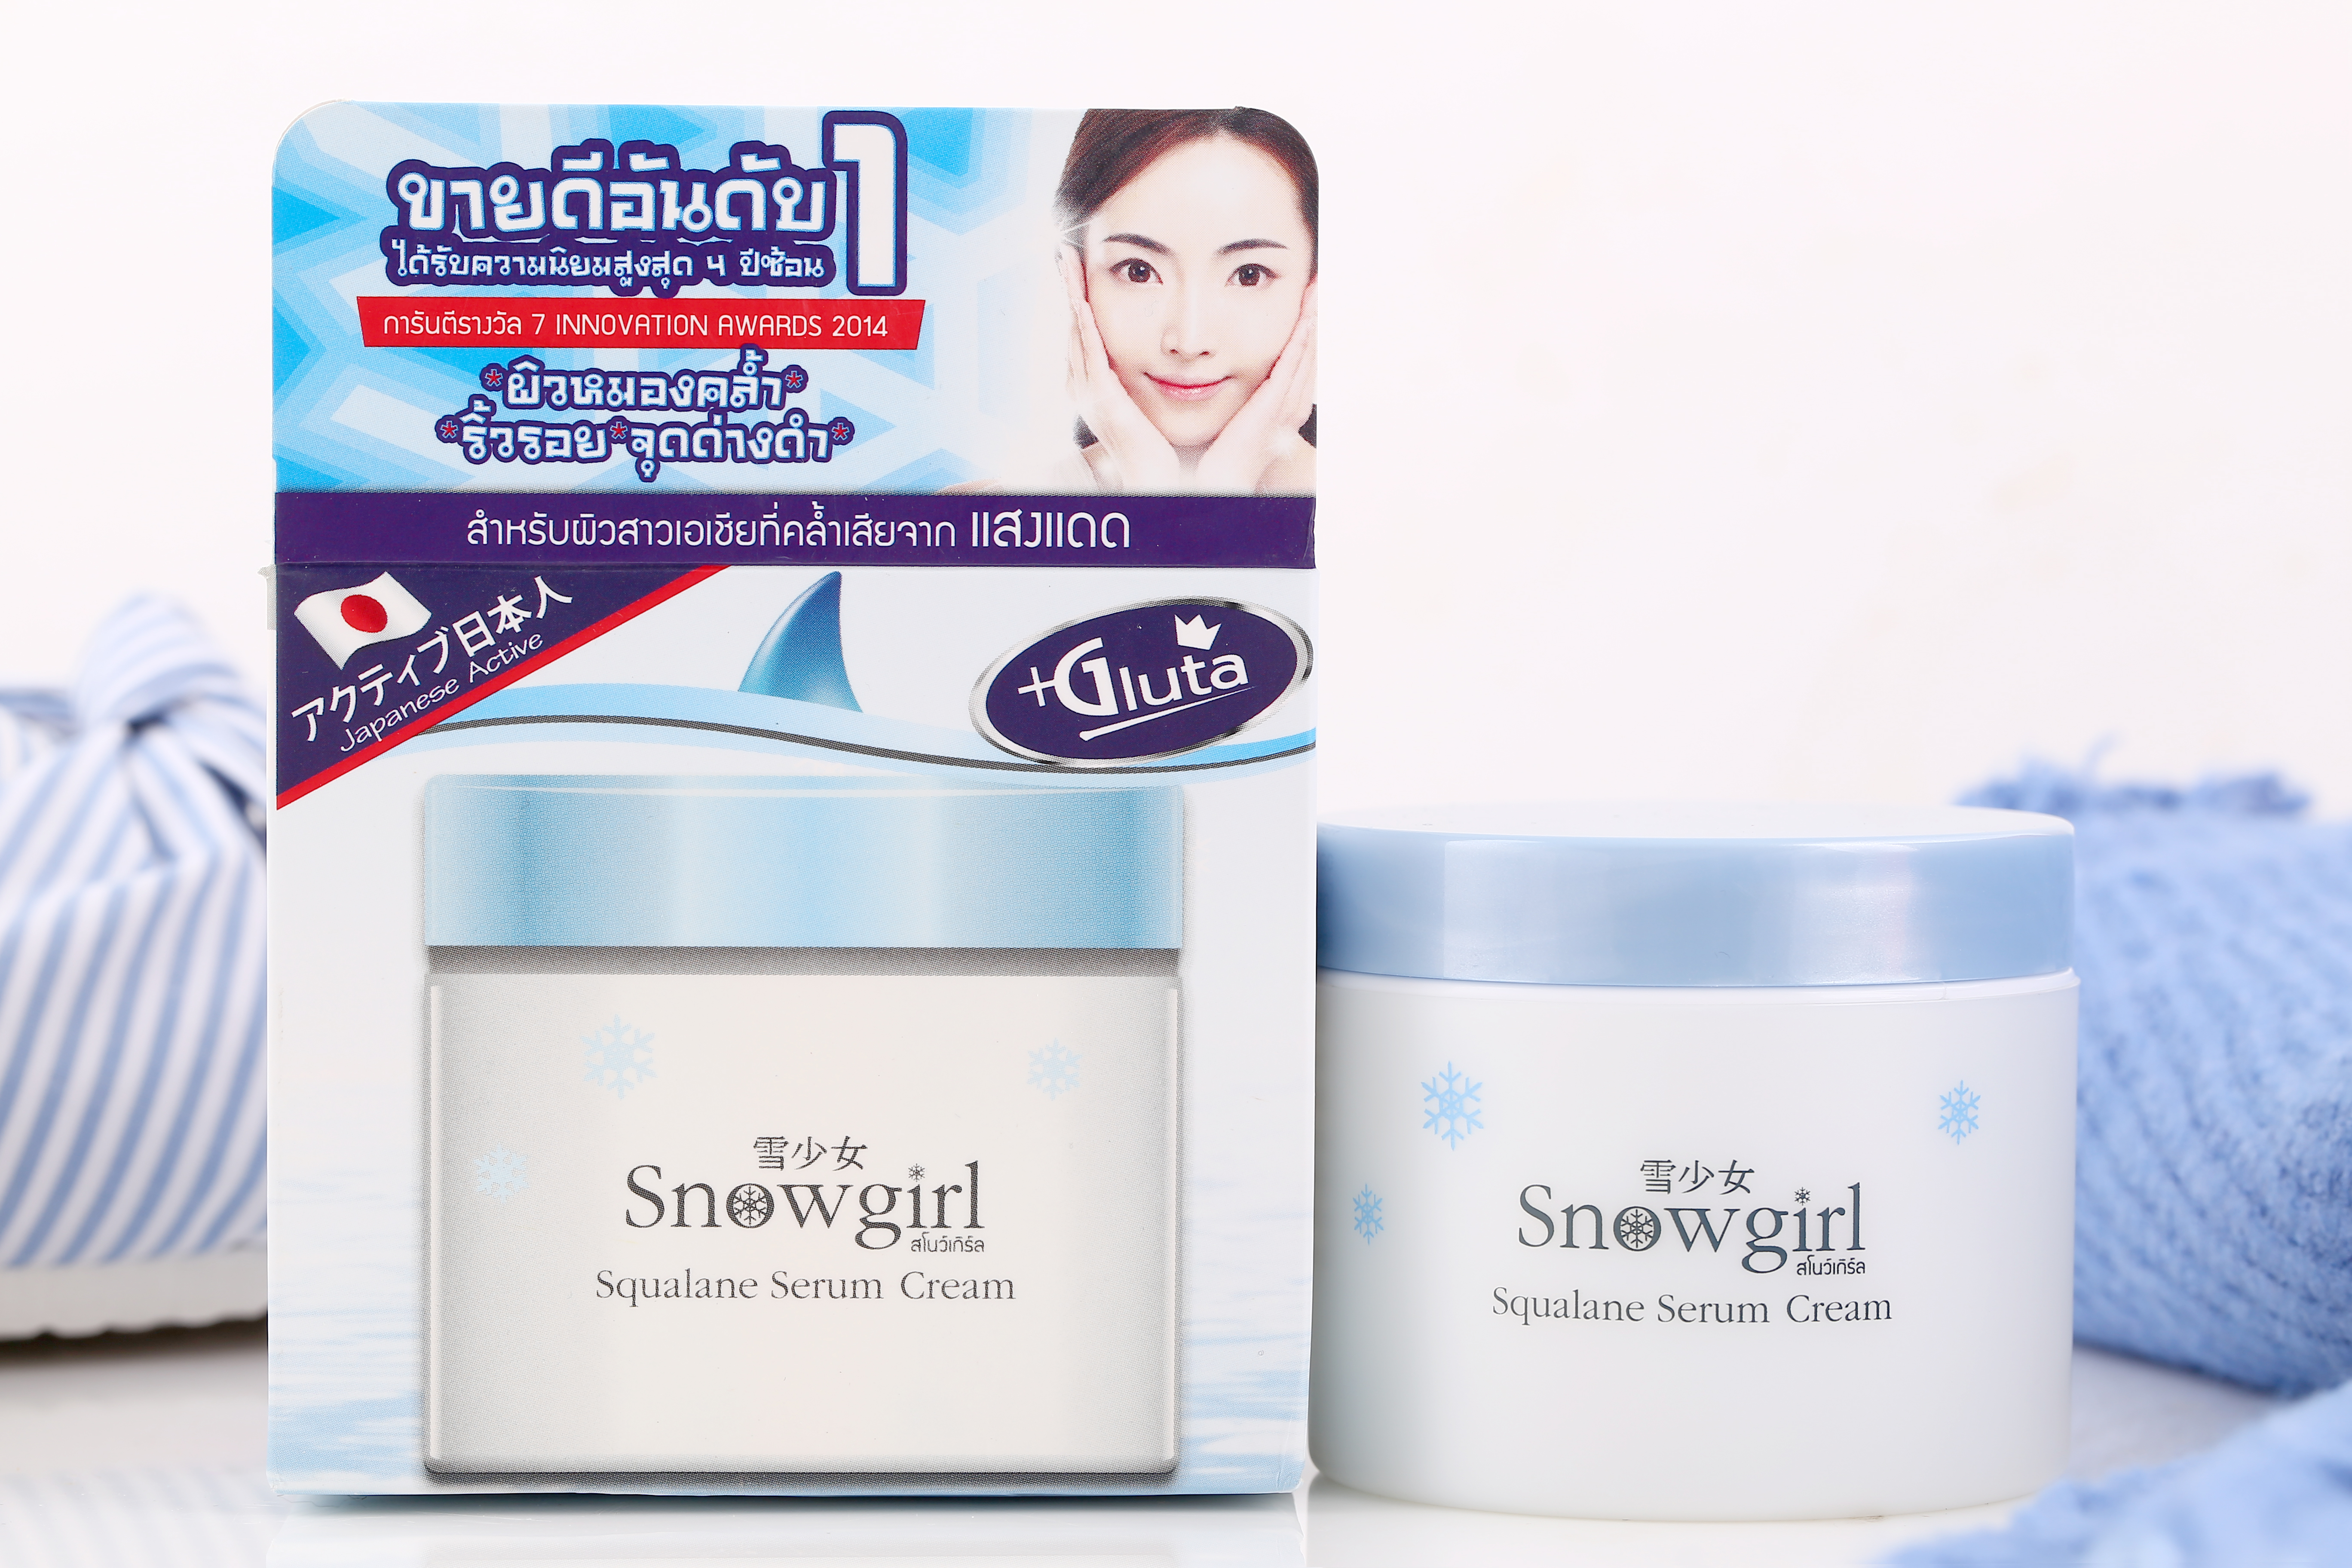 Snowgirl Squalane serum cream 100g.